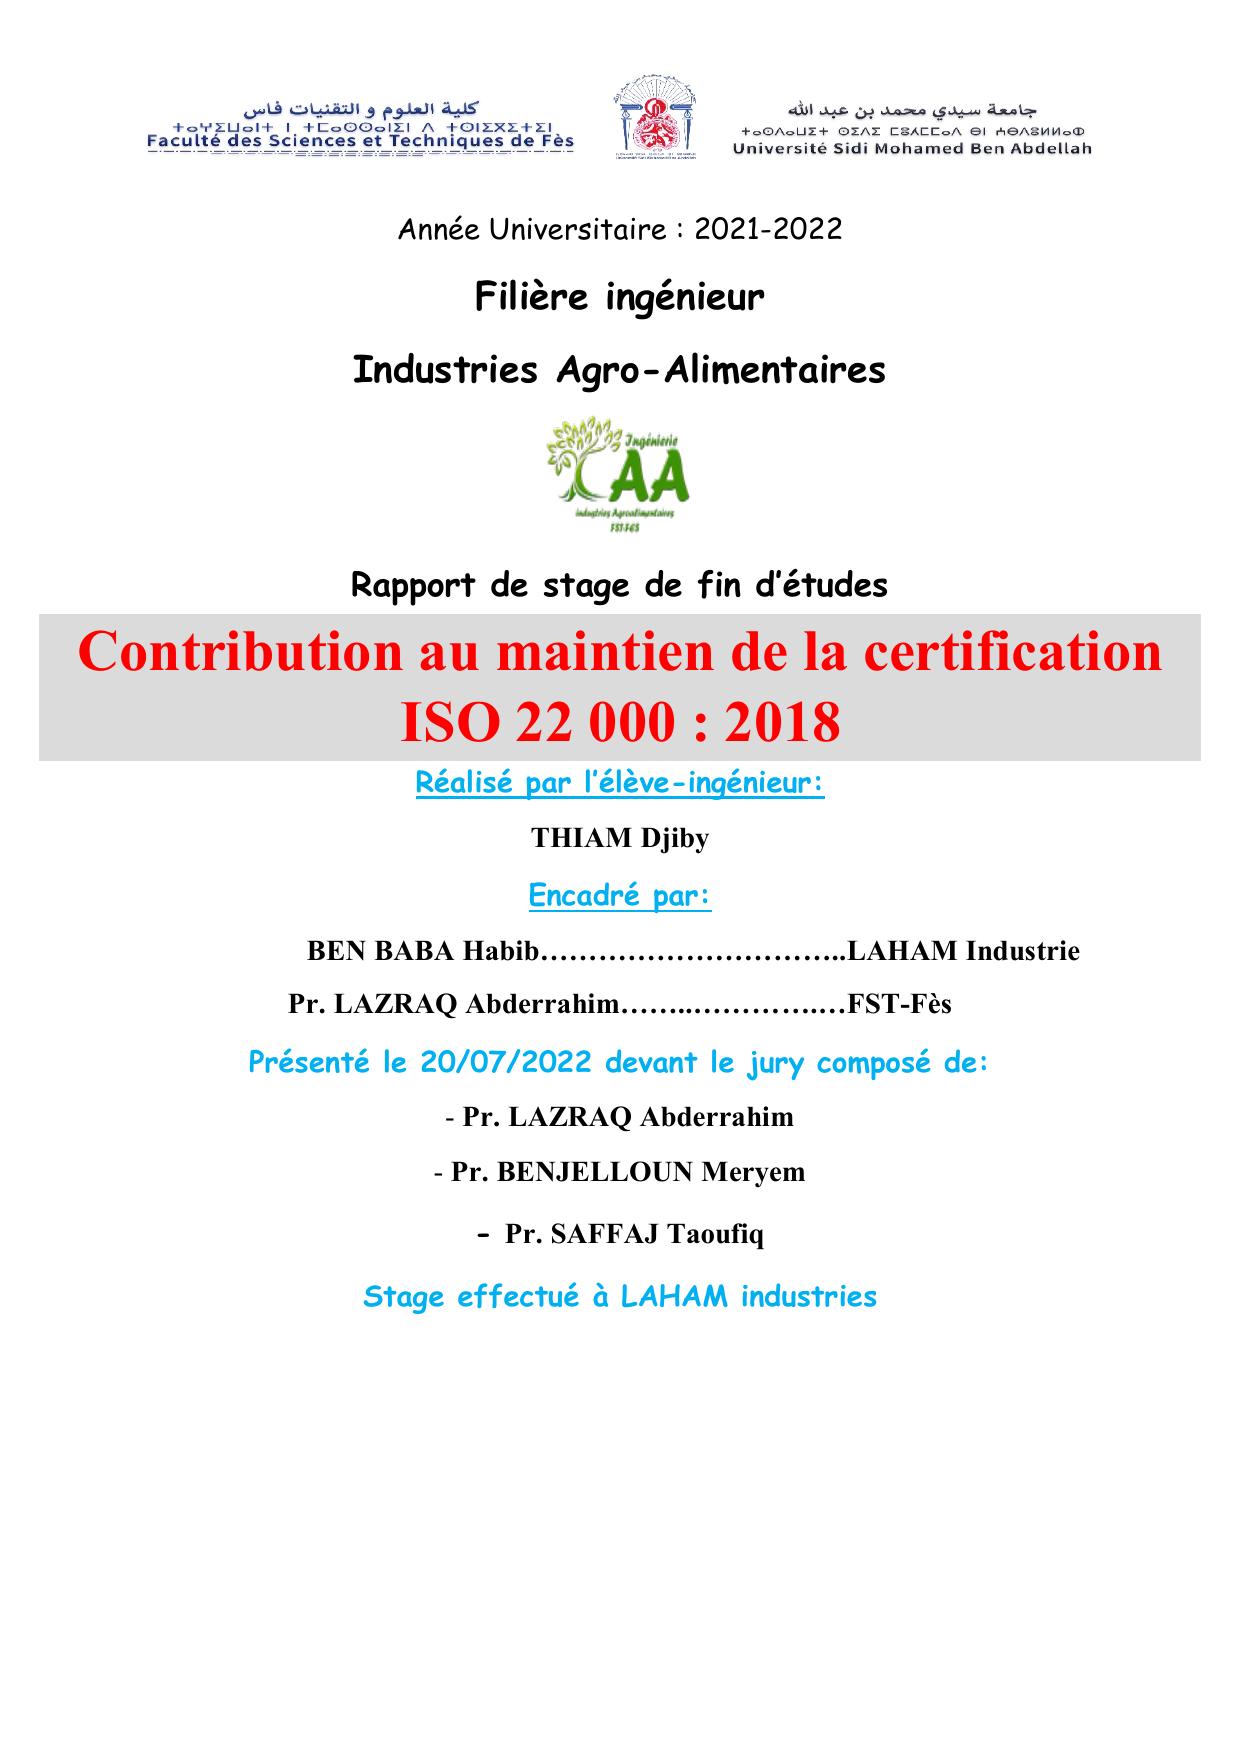 Contribution au maintien de la certification ISO 22 000 : 2018